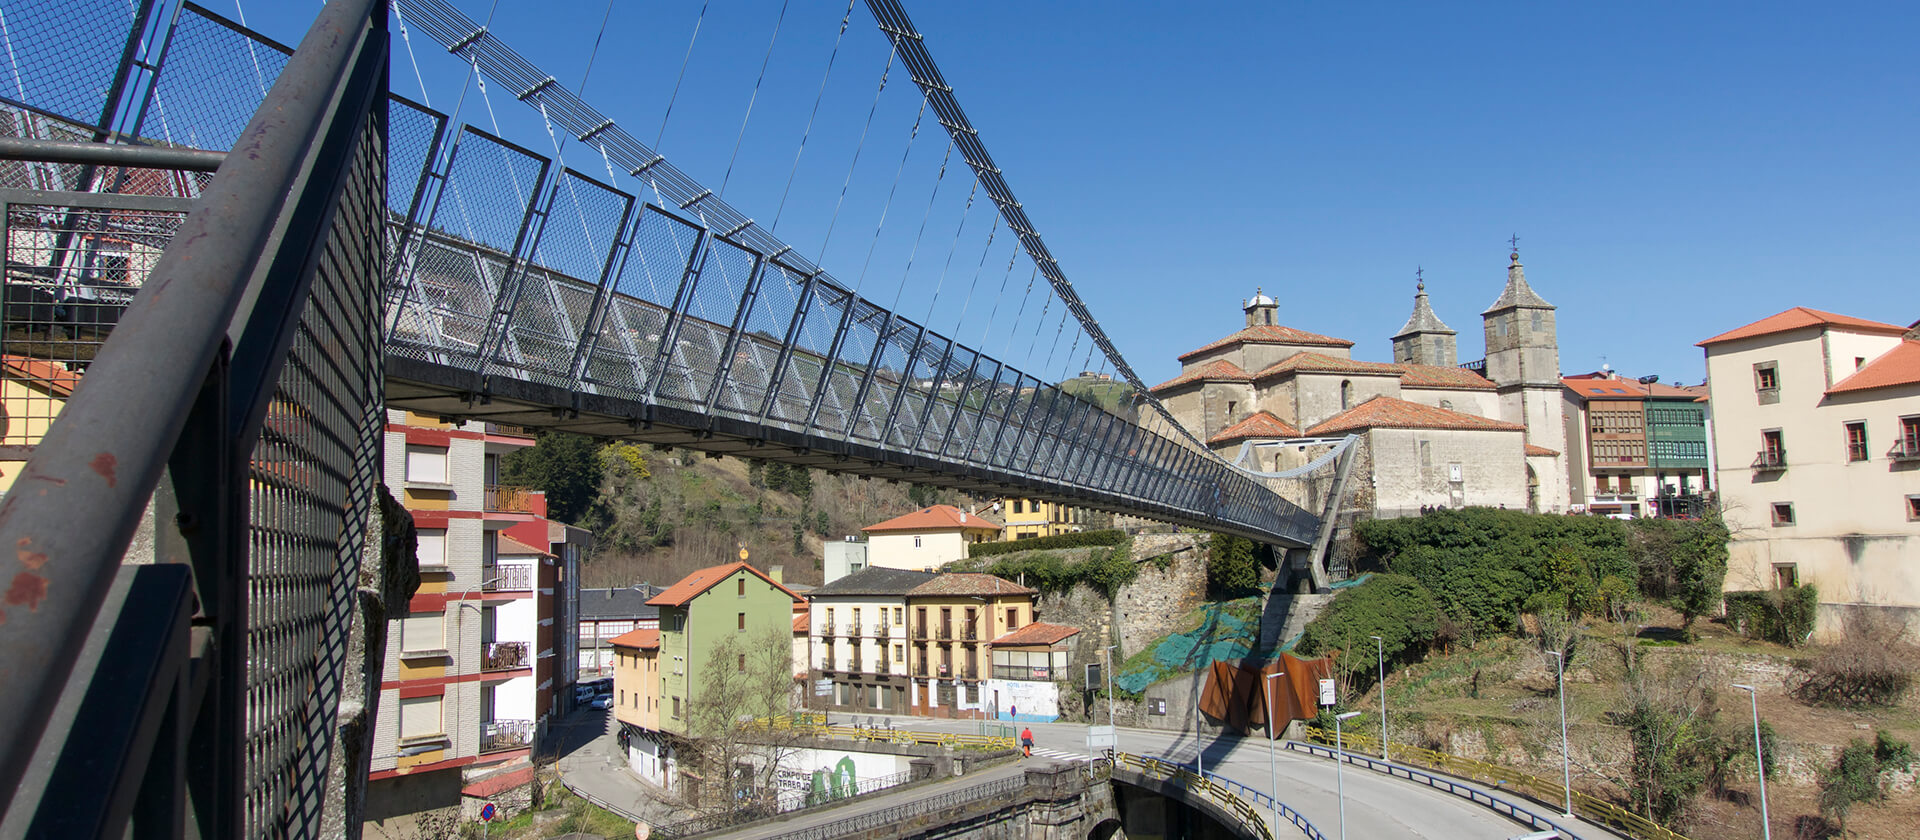 Cangas del Narcea municipio de Asturias para vivir y teletrabajar